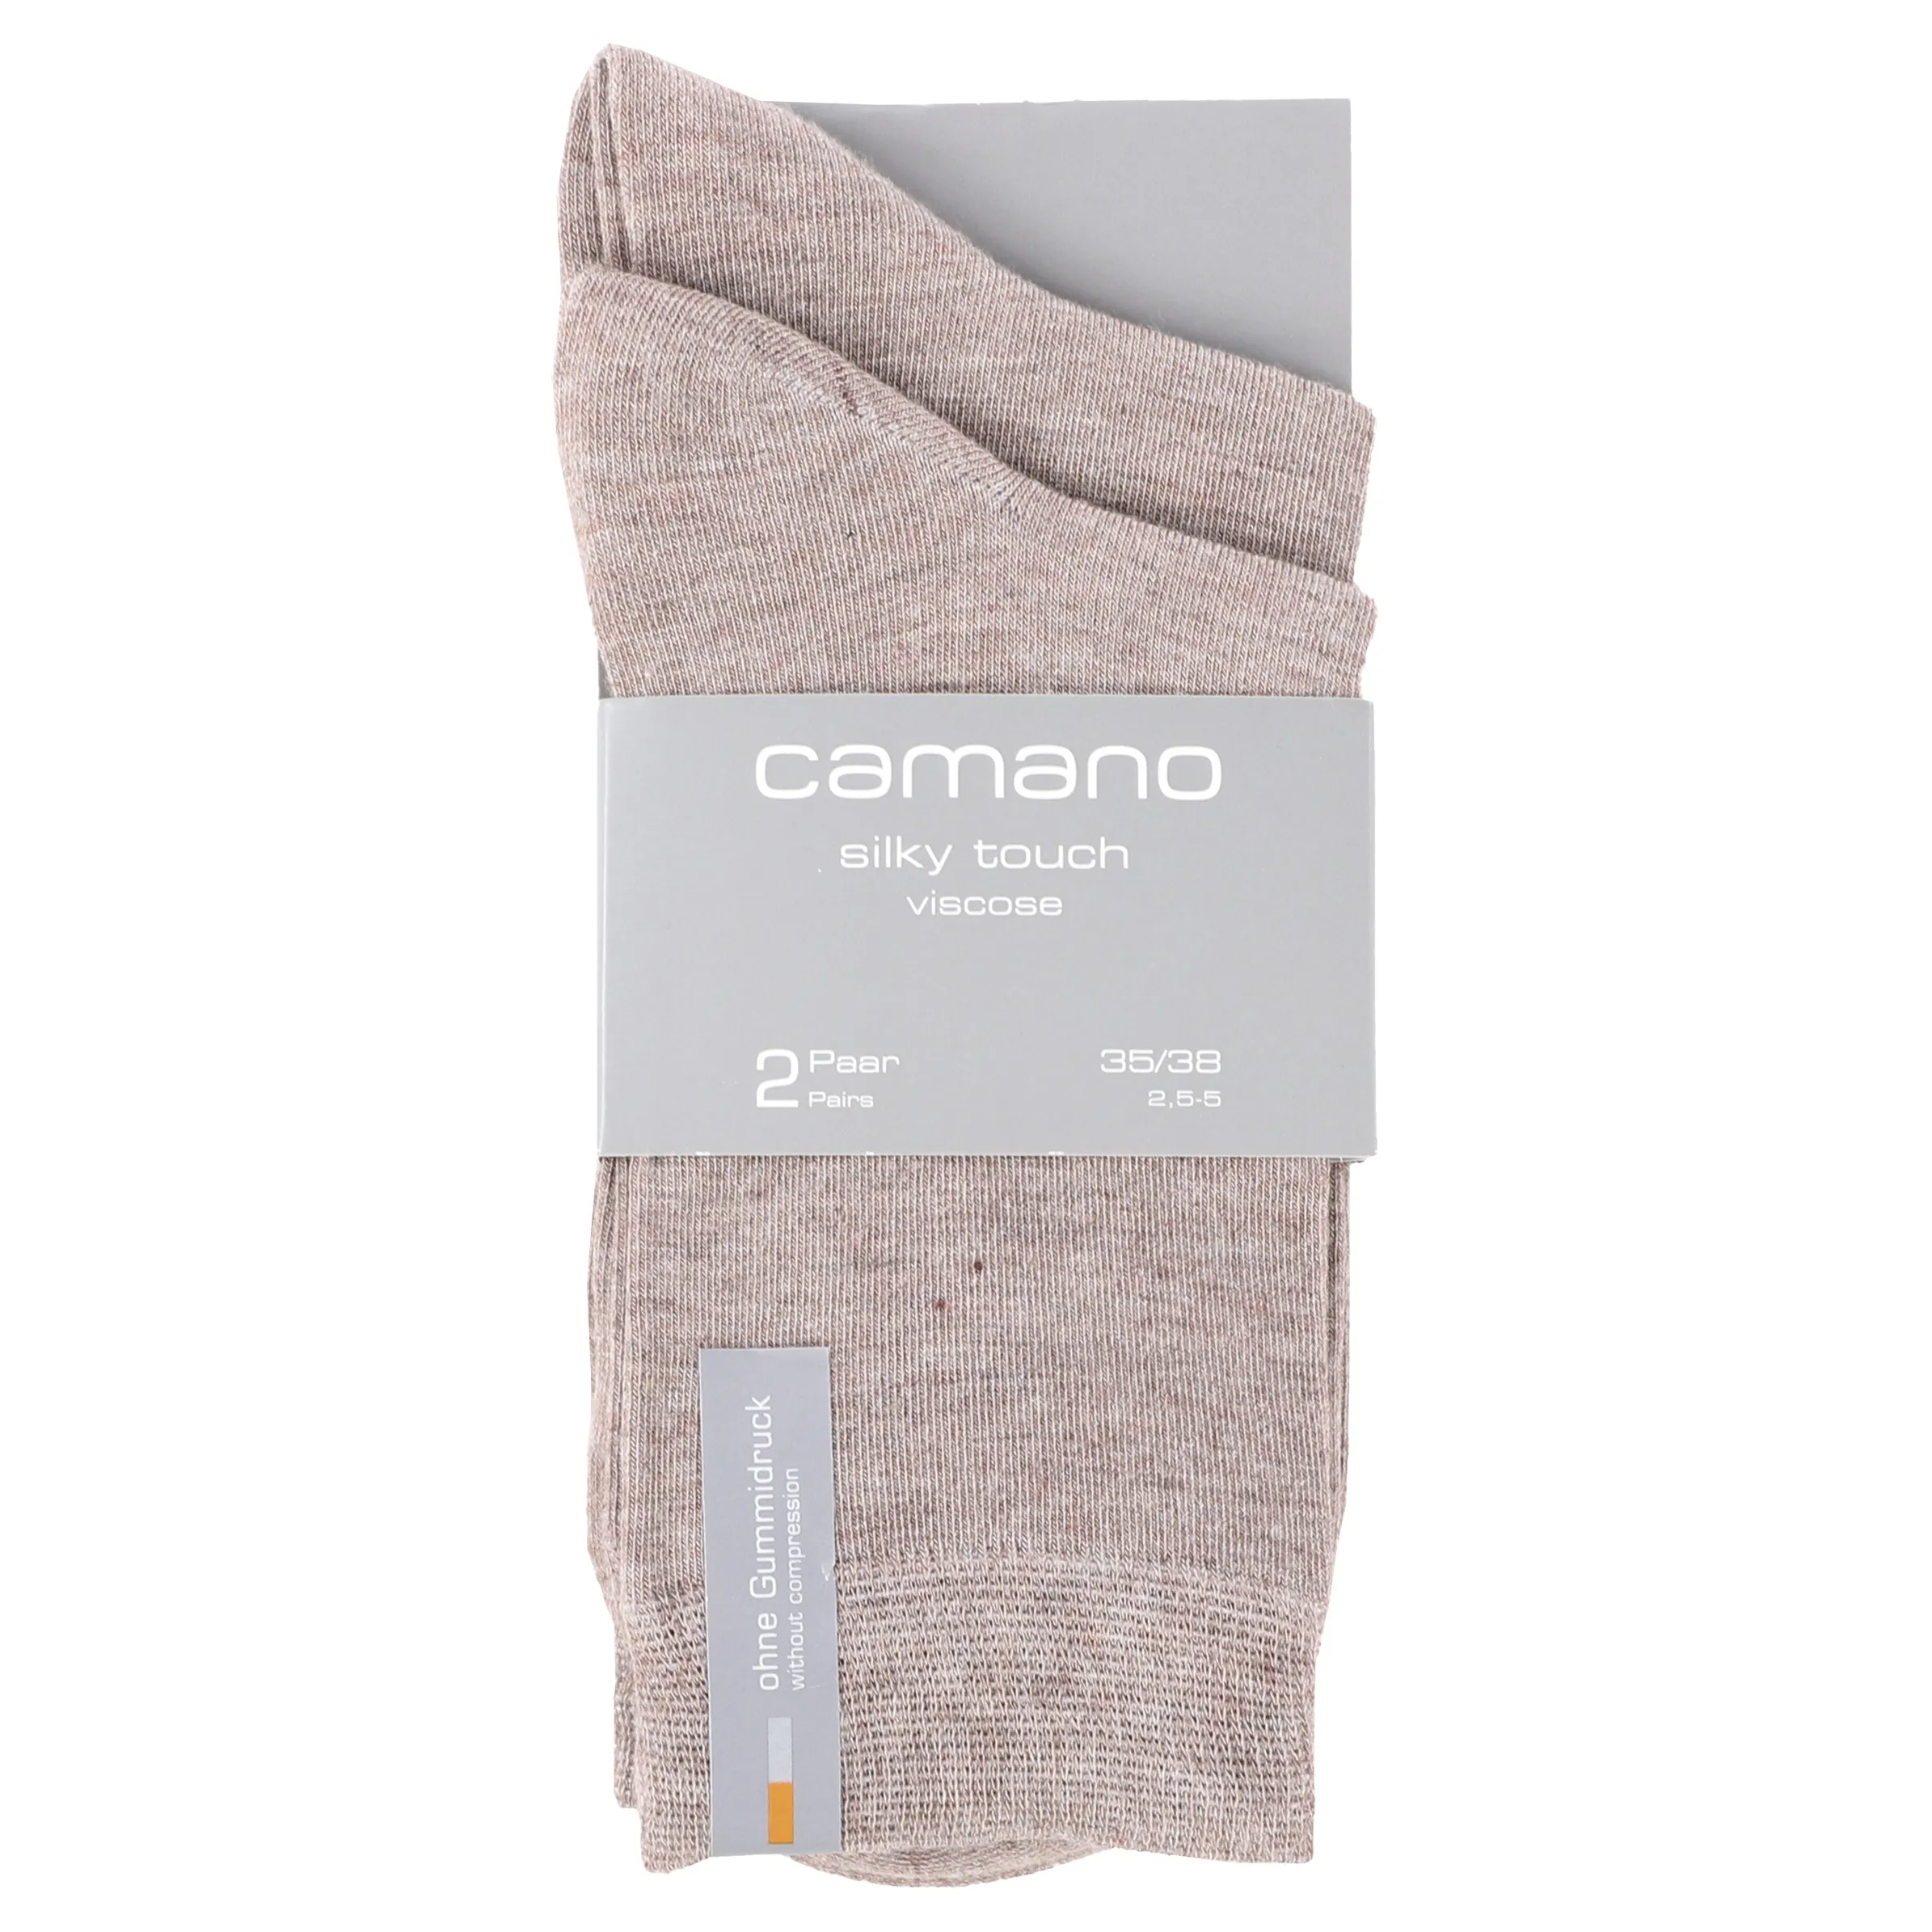 Camano 000003514 Da-Socken silky f 2P Braun 861930 8500 3